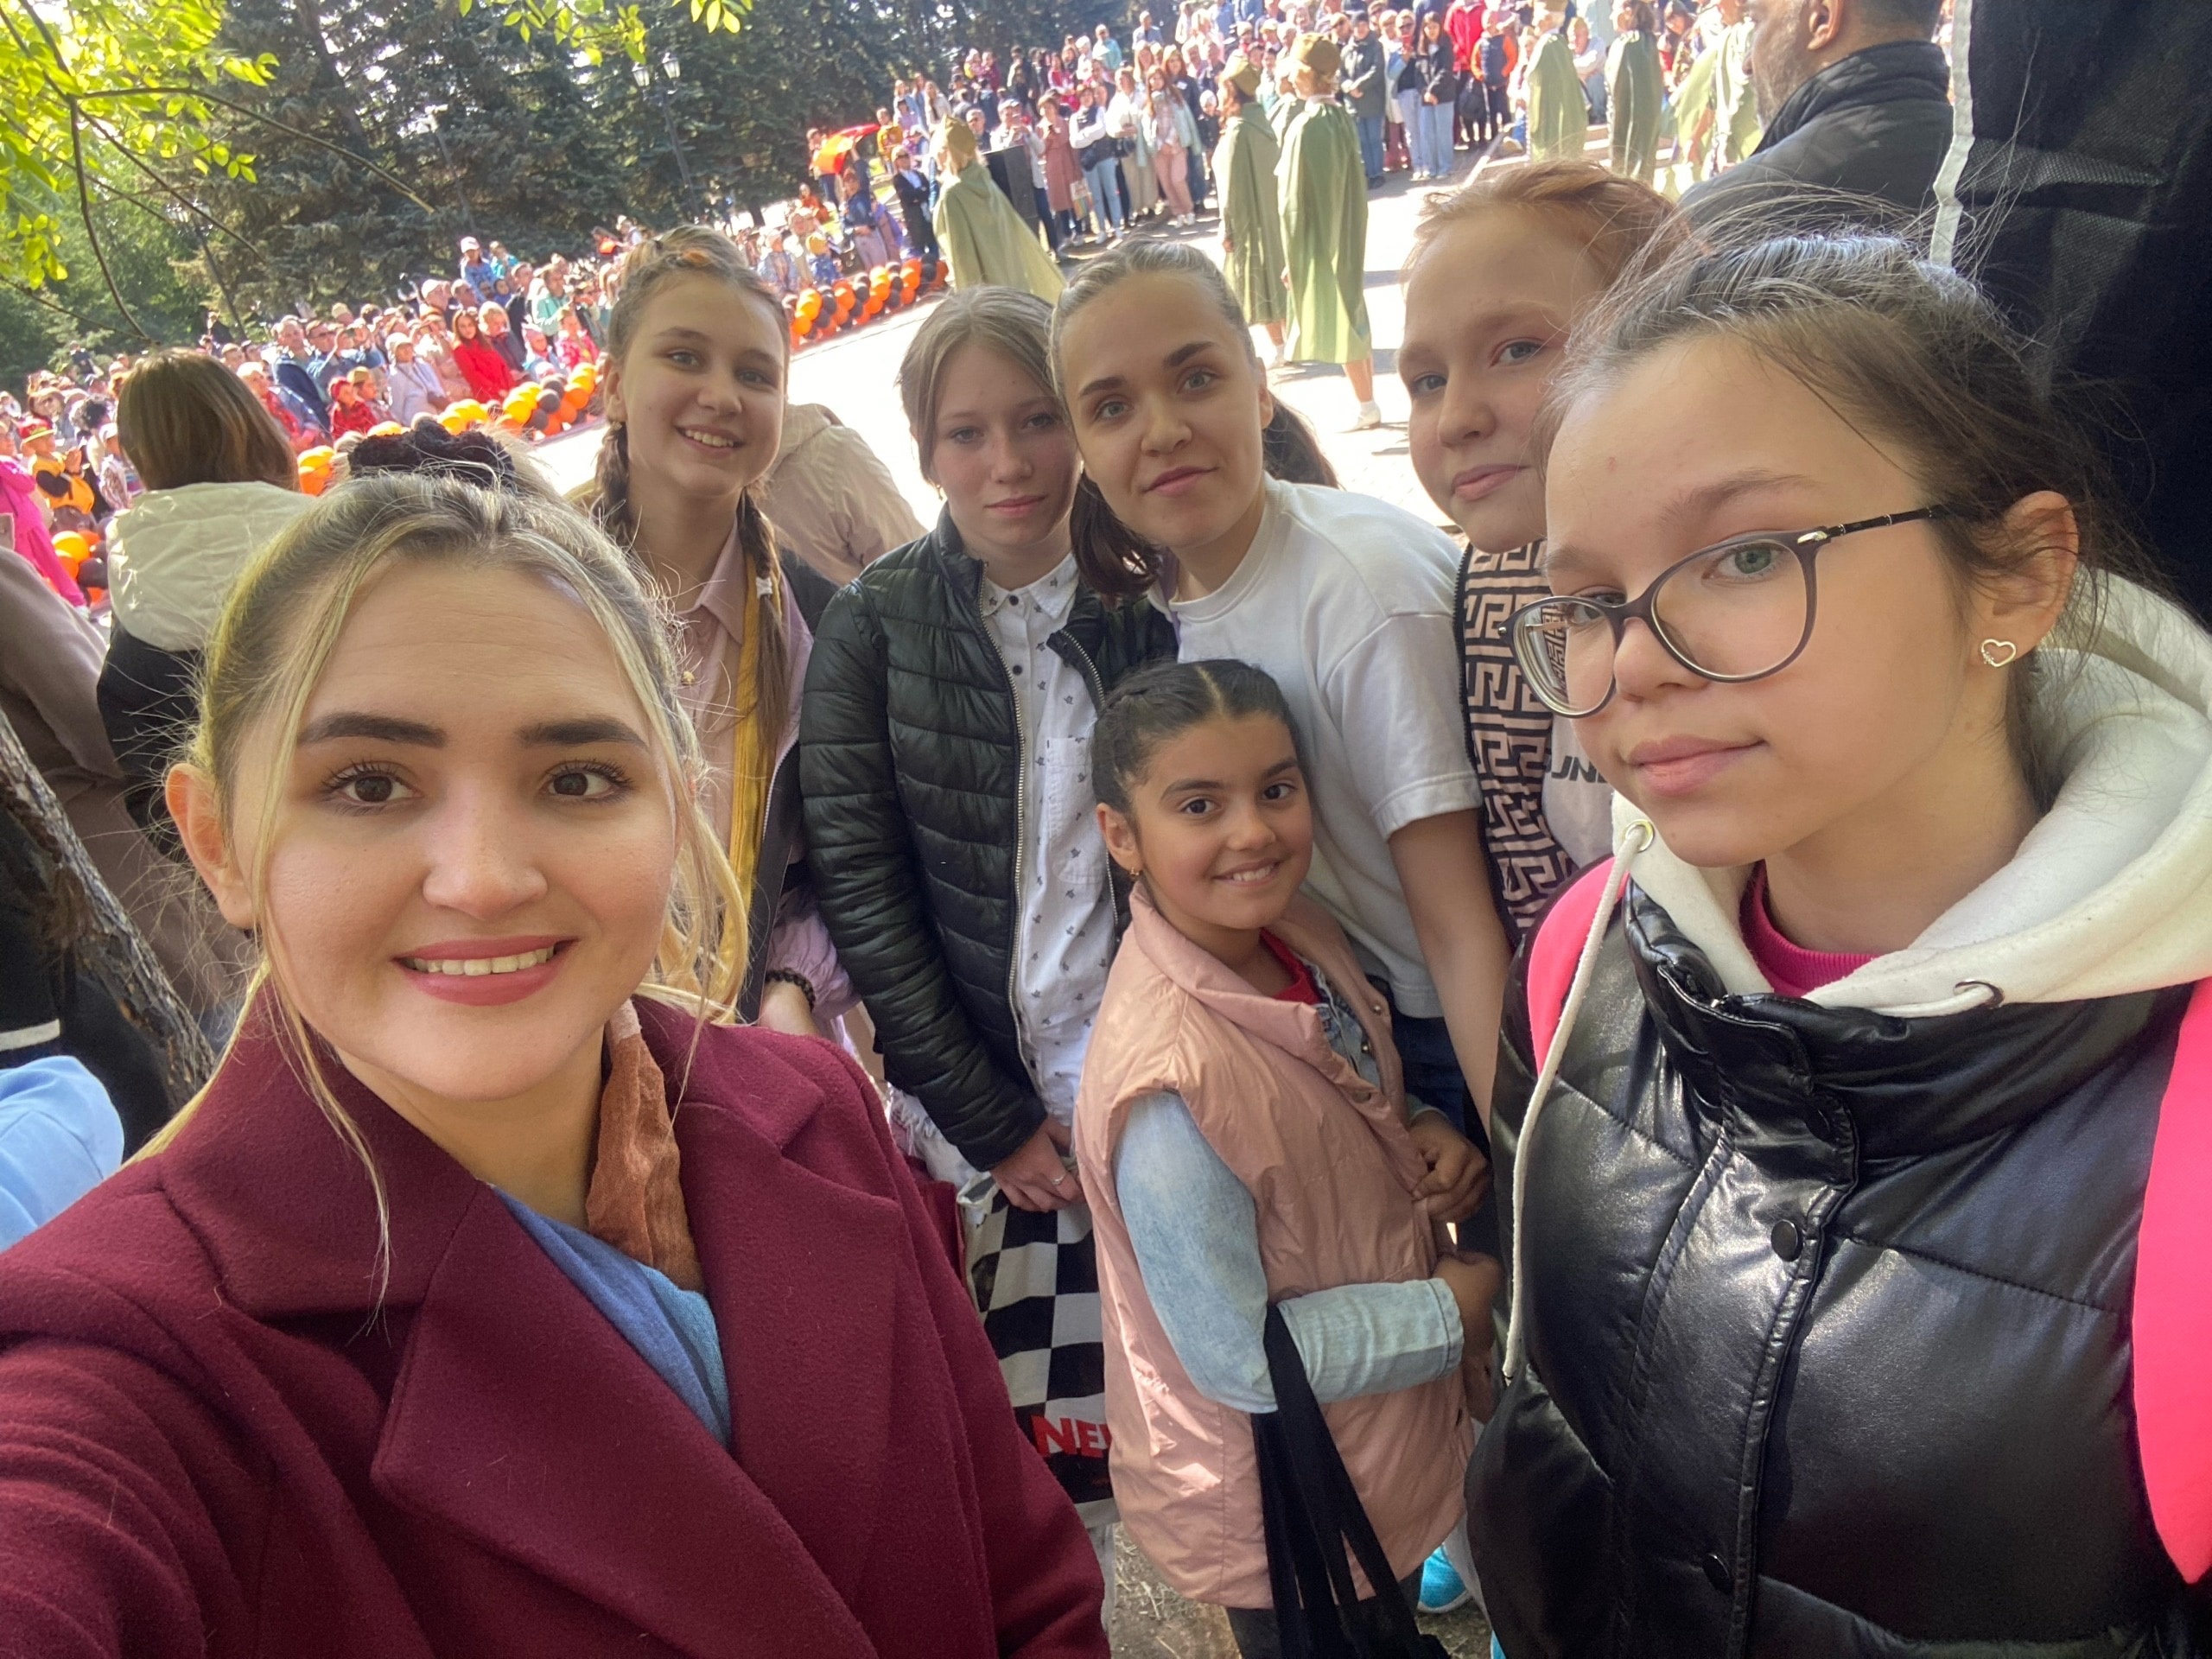 9 мая объединение «Вокал» подросткового клуба «Северный» приняли участия в праздничном концерте, посвященном дню Победы